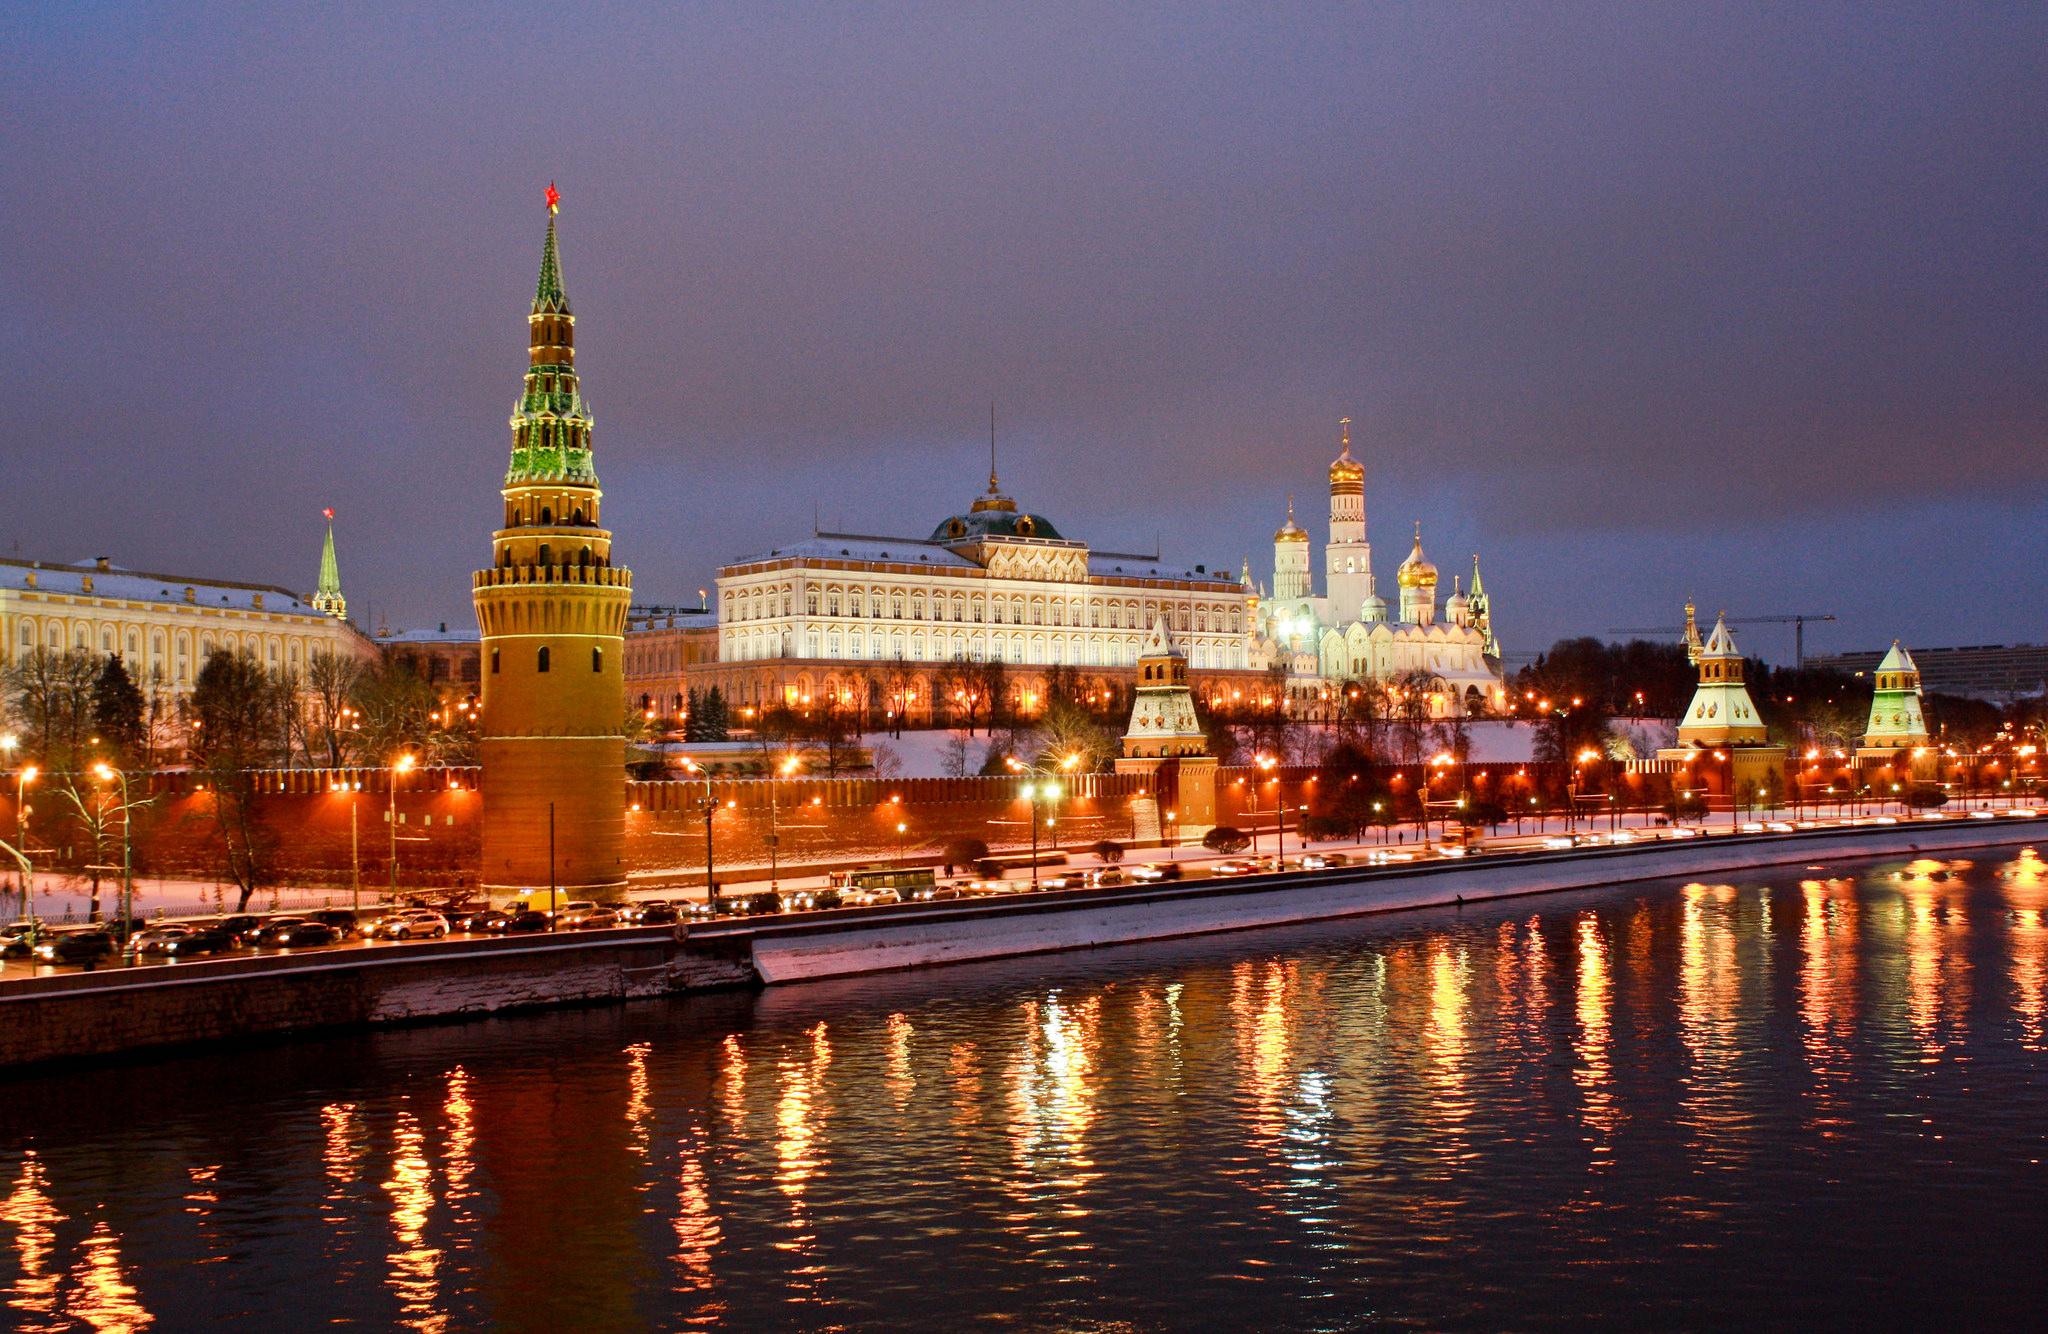 Обои Москва-река освещение ночь на рабочий стол